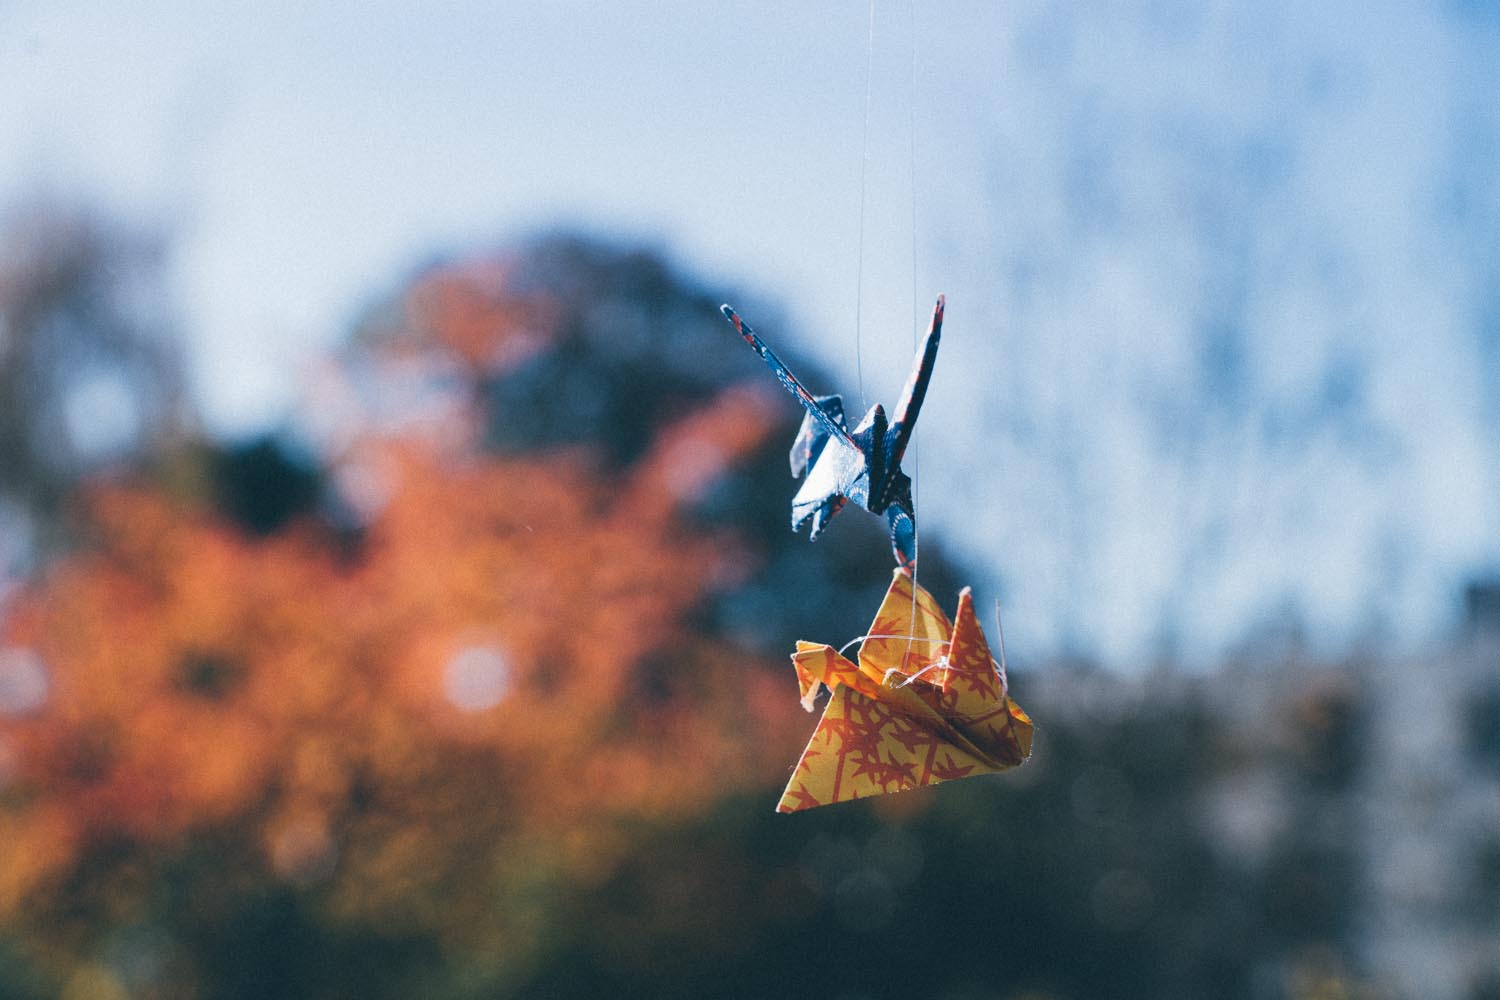 Origami d'automne